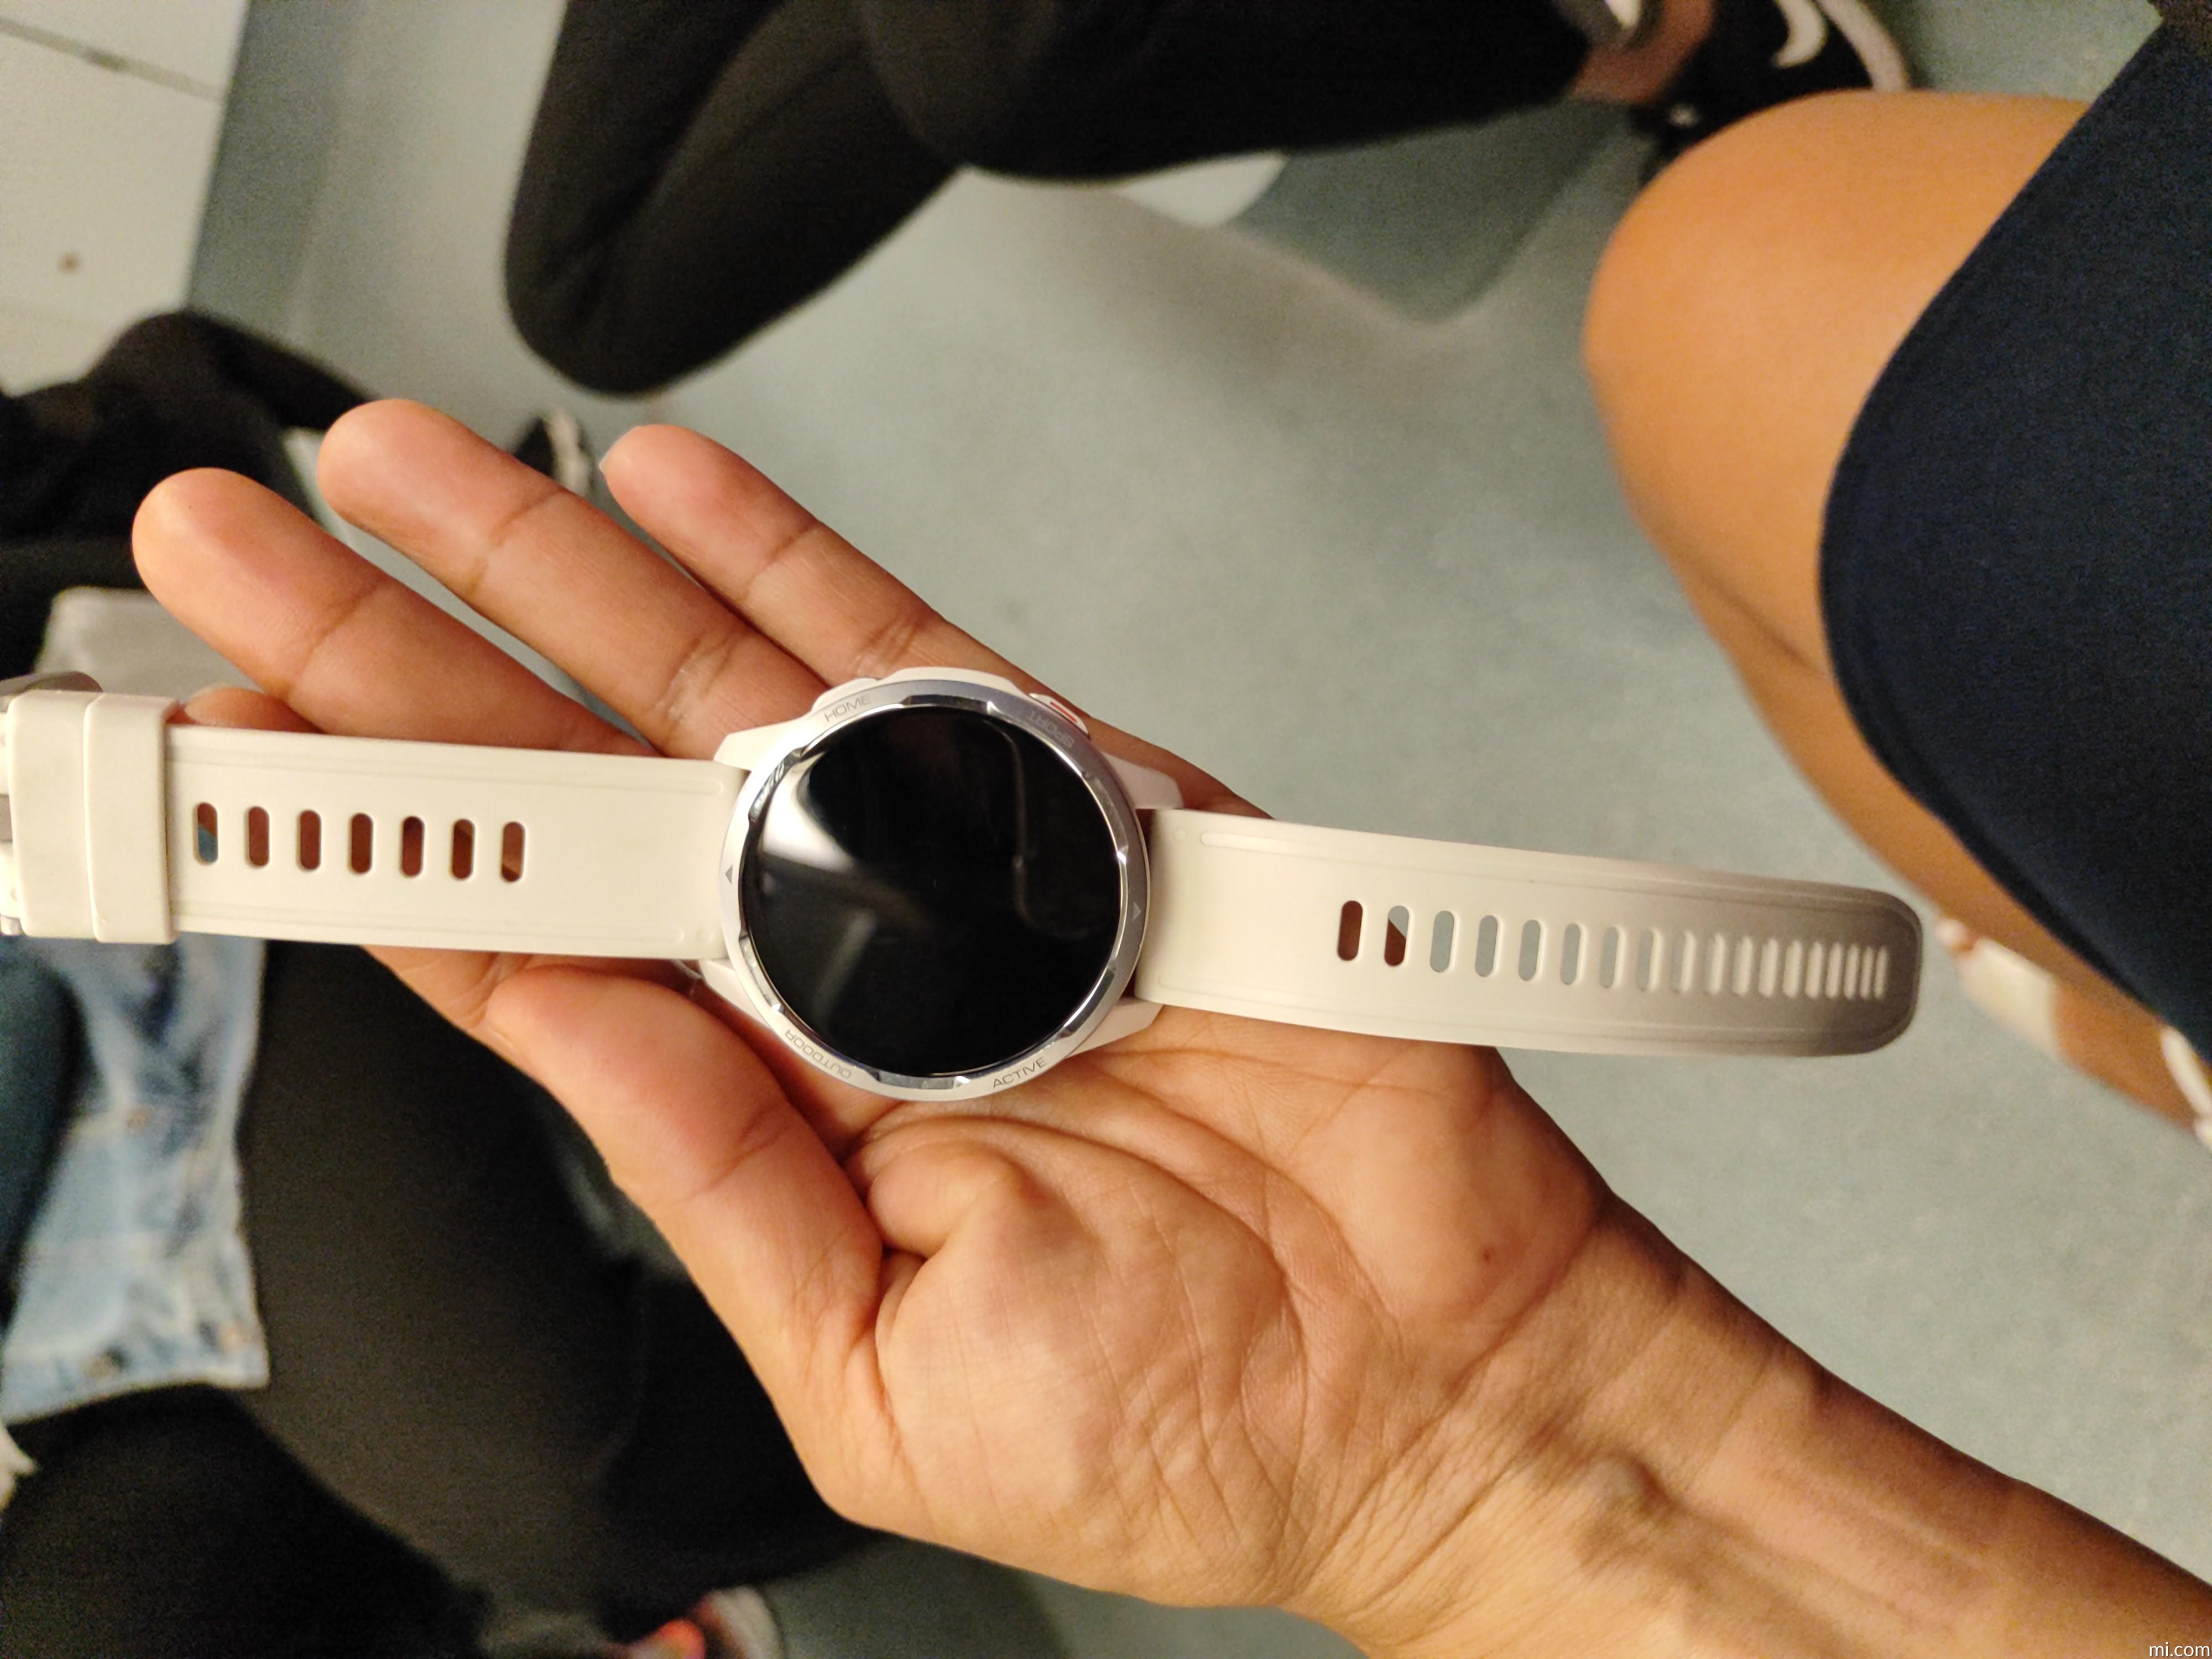 Xiaomi reloj con llamadas inteligente mujer blanco Smartwatch de